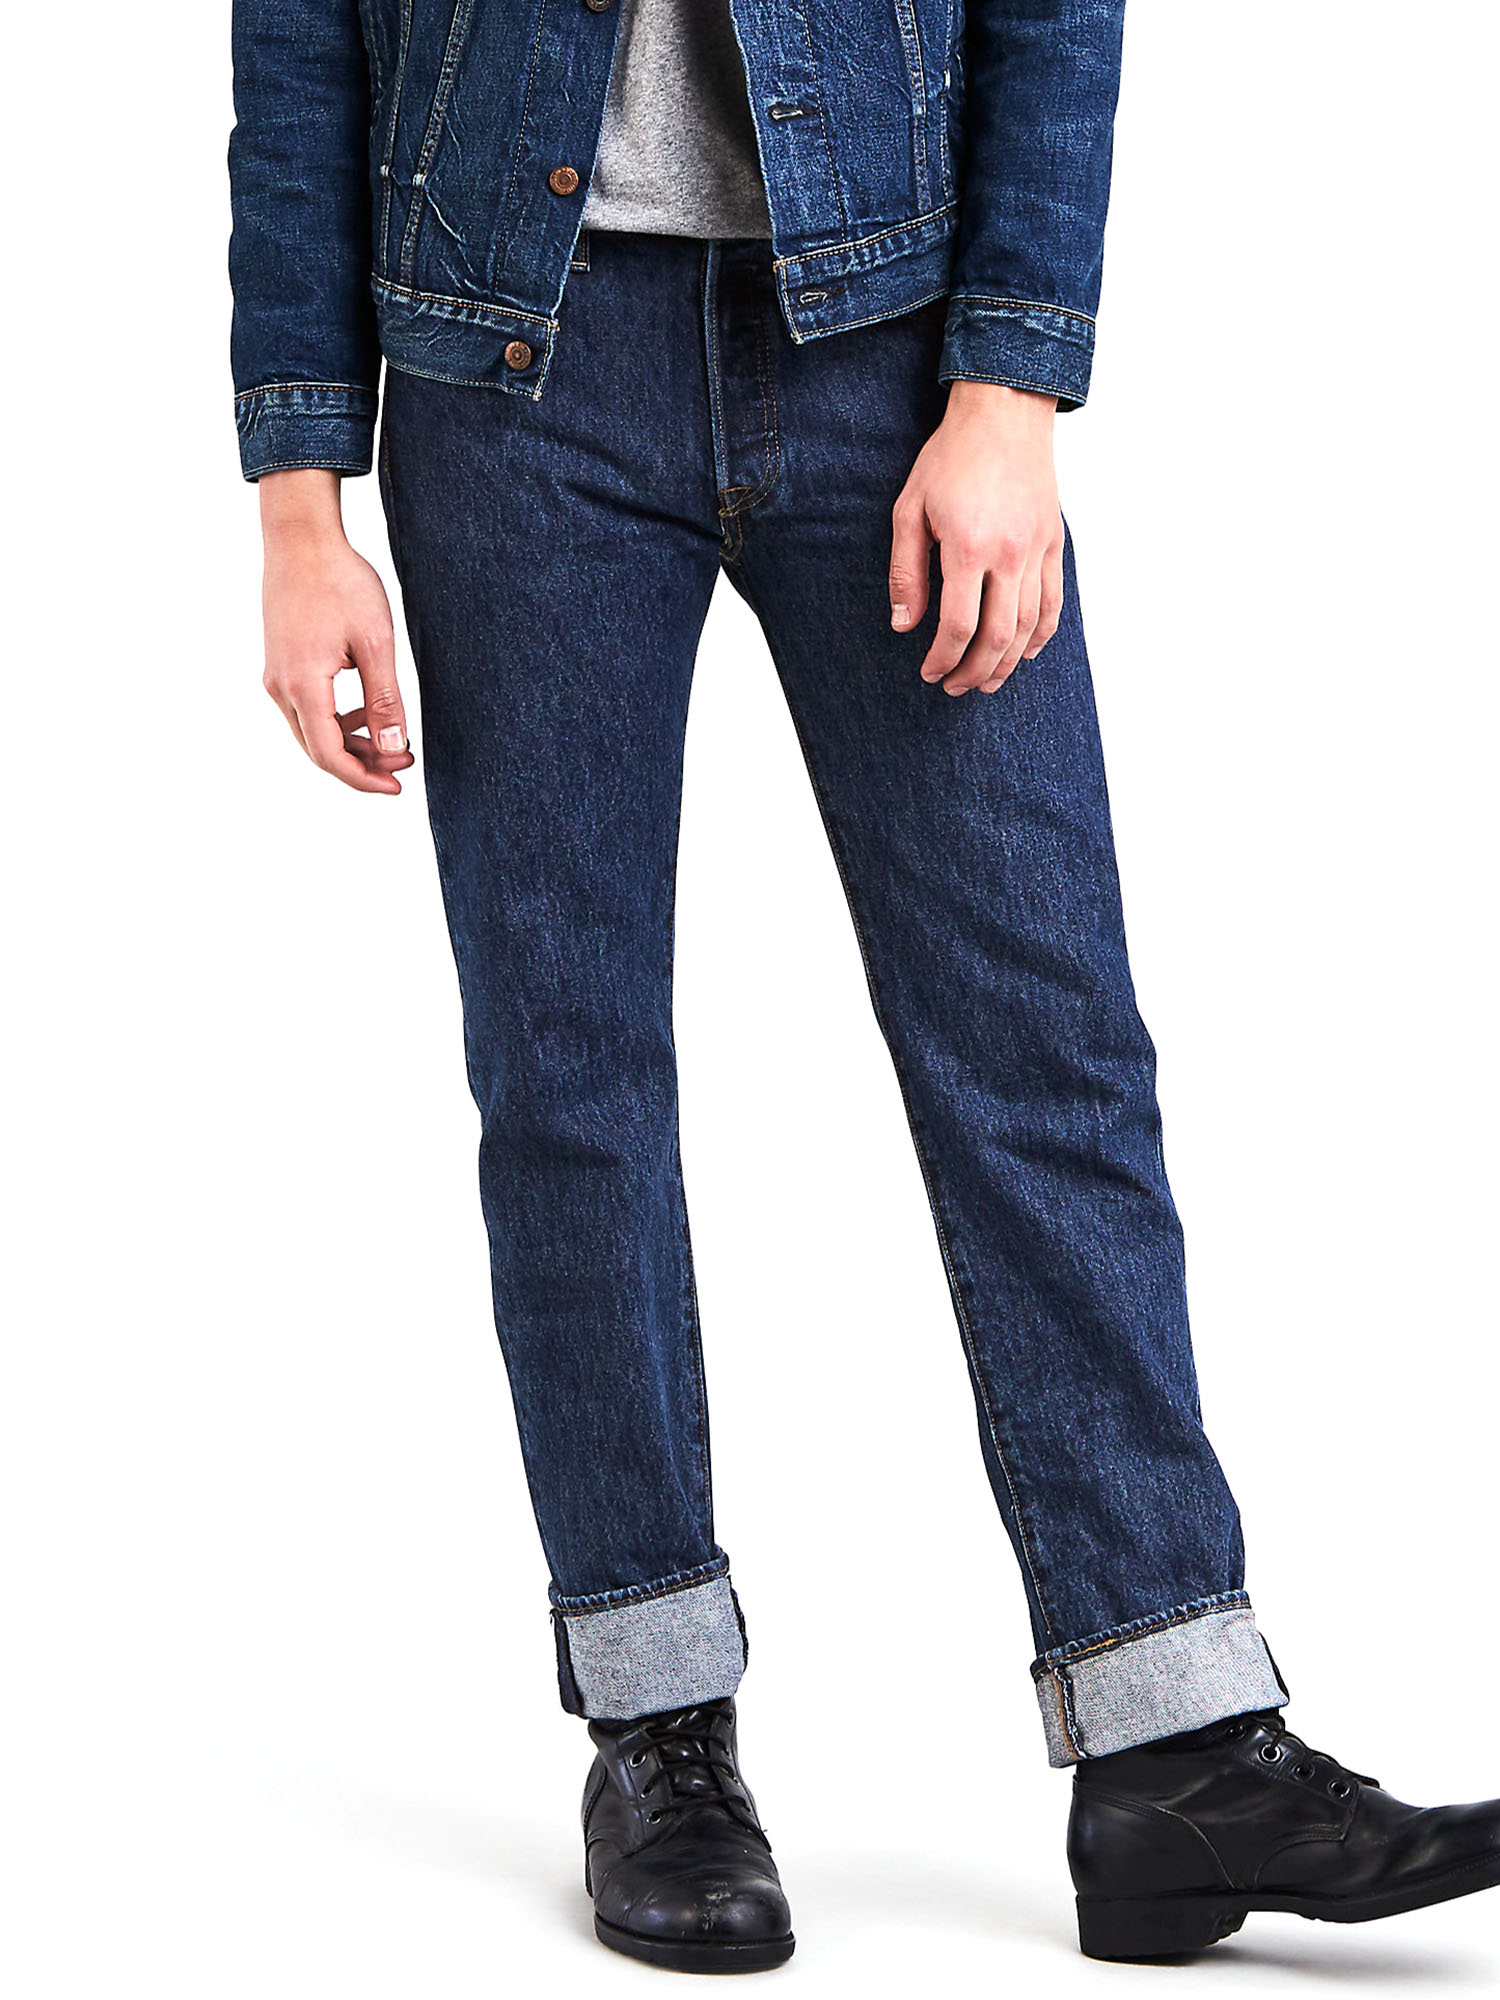 Levi's Men's 501 Original Fit Jeans - image 1 of 9